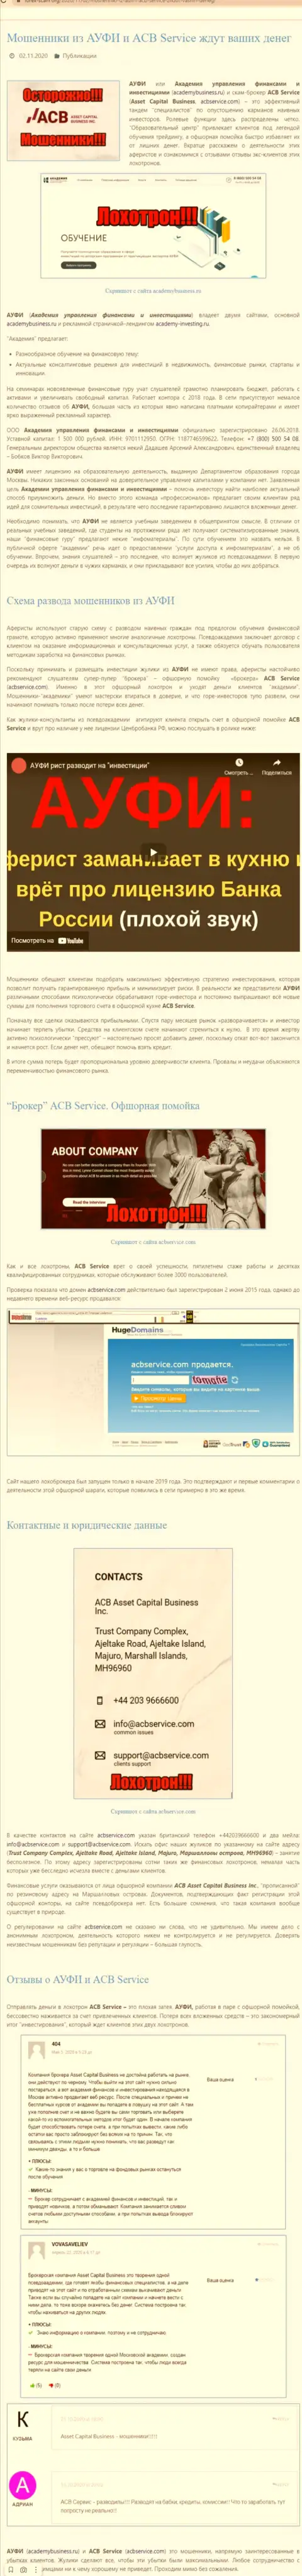 AcademyBusiness Ru - это МОШЕННИКИ и АФЕРИСТЫ !!! Обманывают и крадут депозиты (обзор мошеннических уловок)